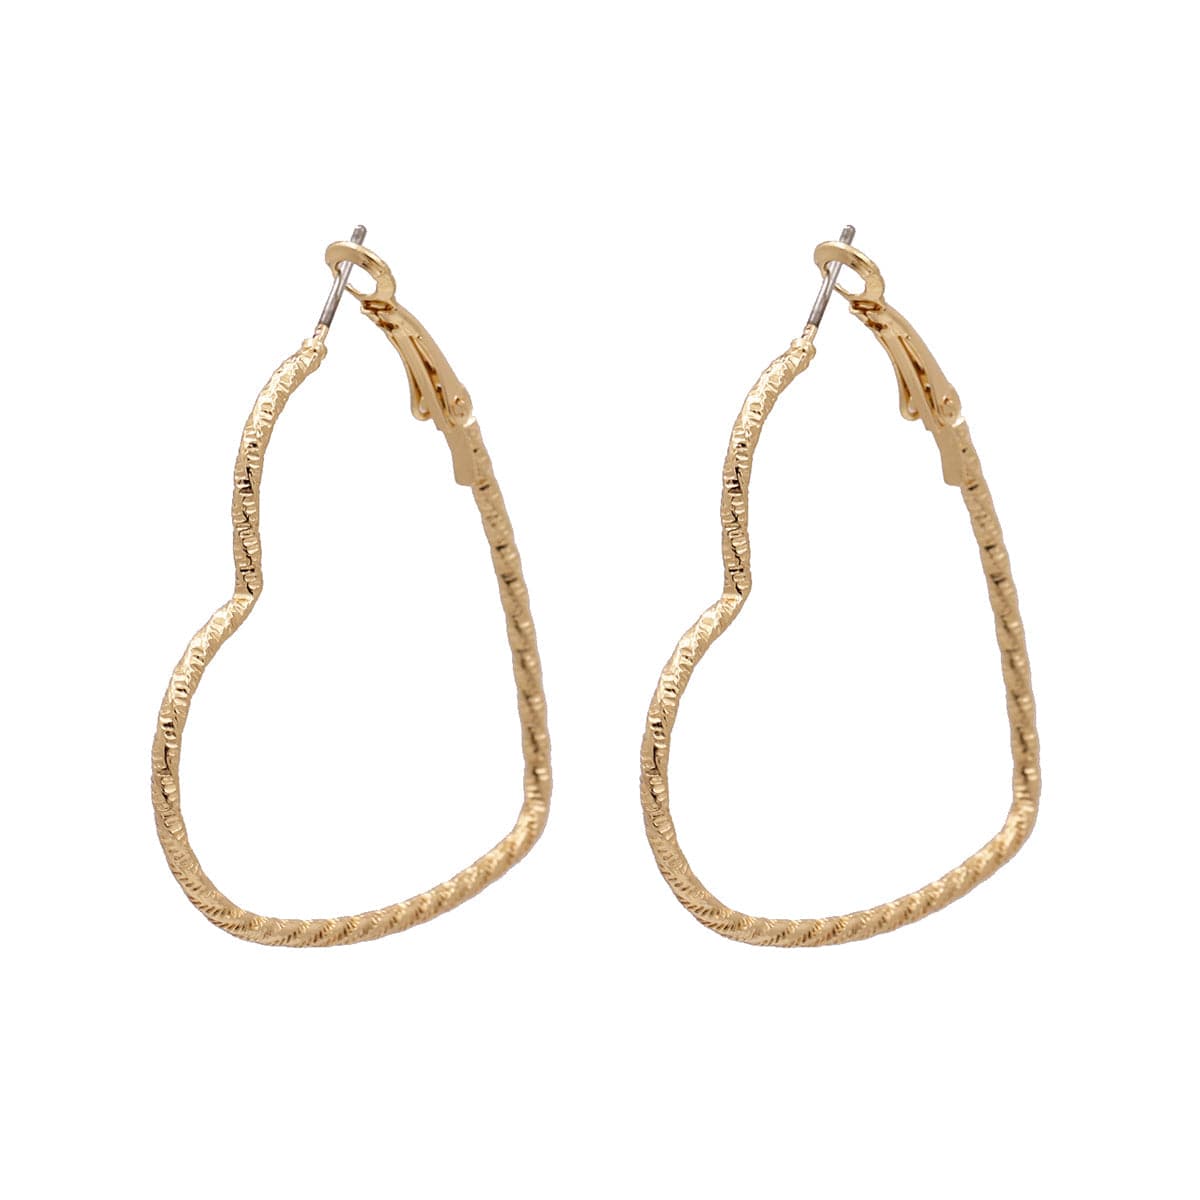 18K Gold-Plated Twisted Open Heart Hoop Earrings